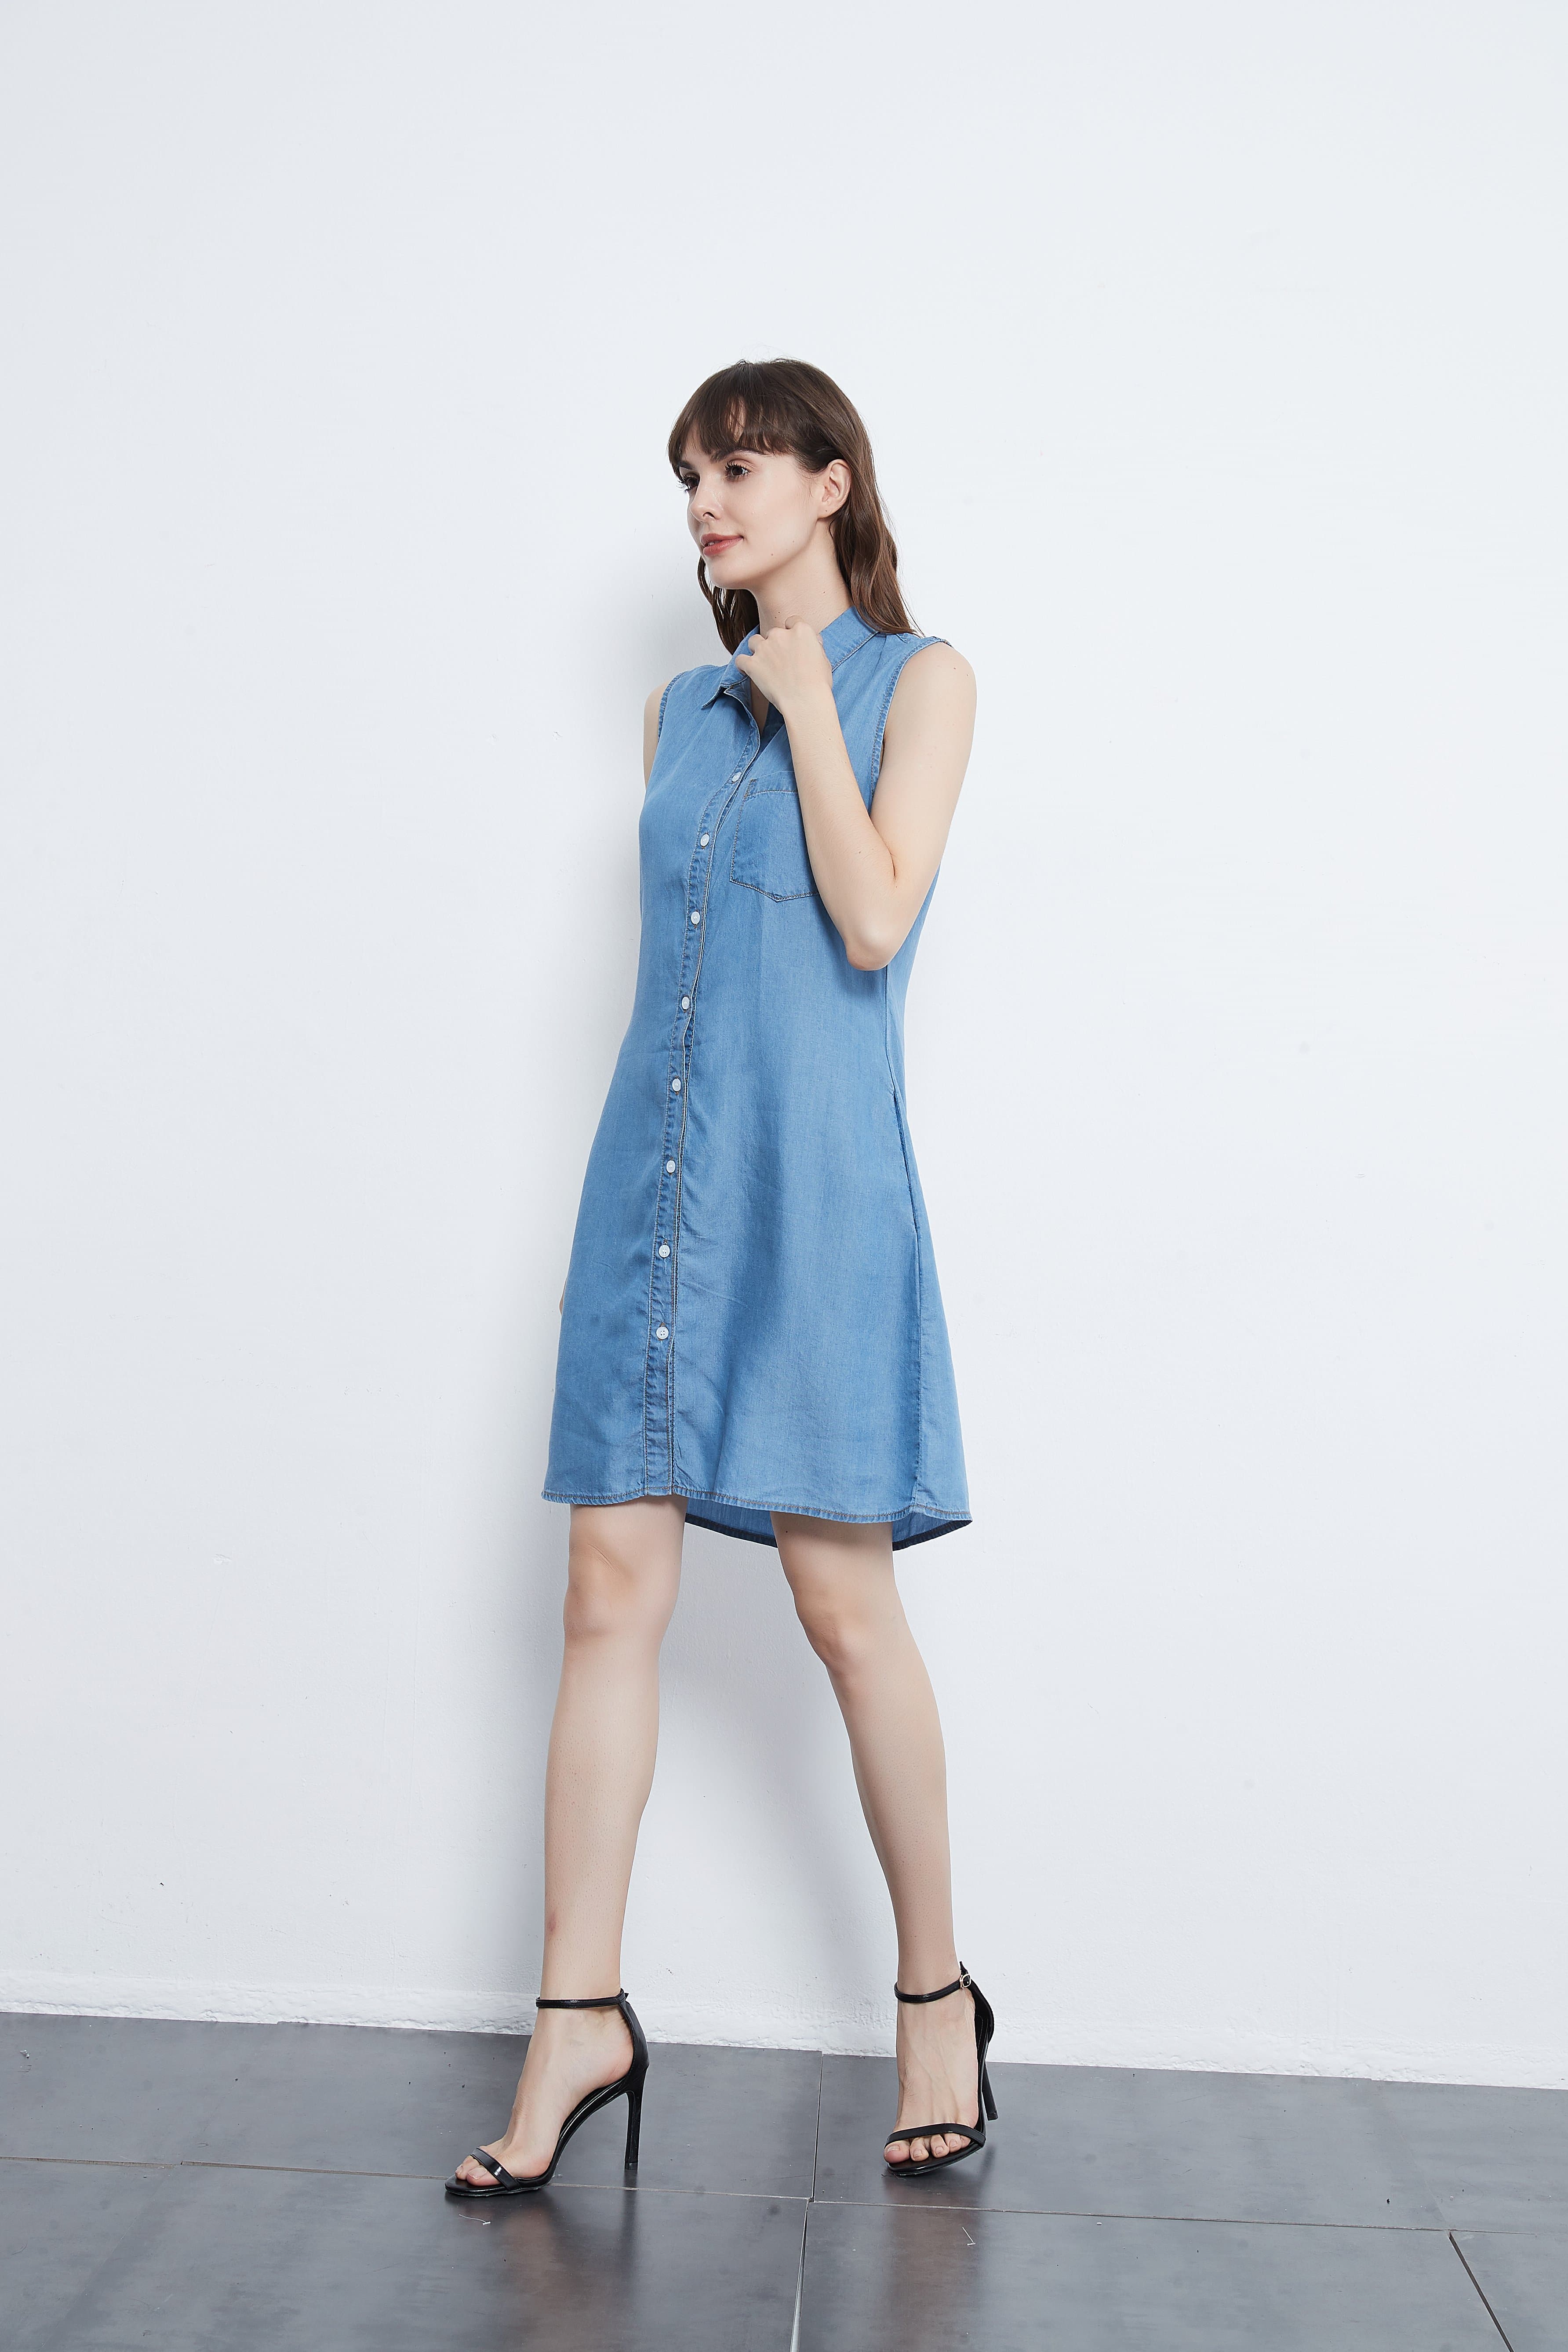 Elan Blue Wash Denim Button Down Dress at Maria Vincent Boutique